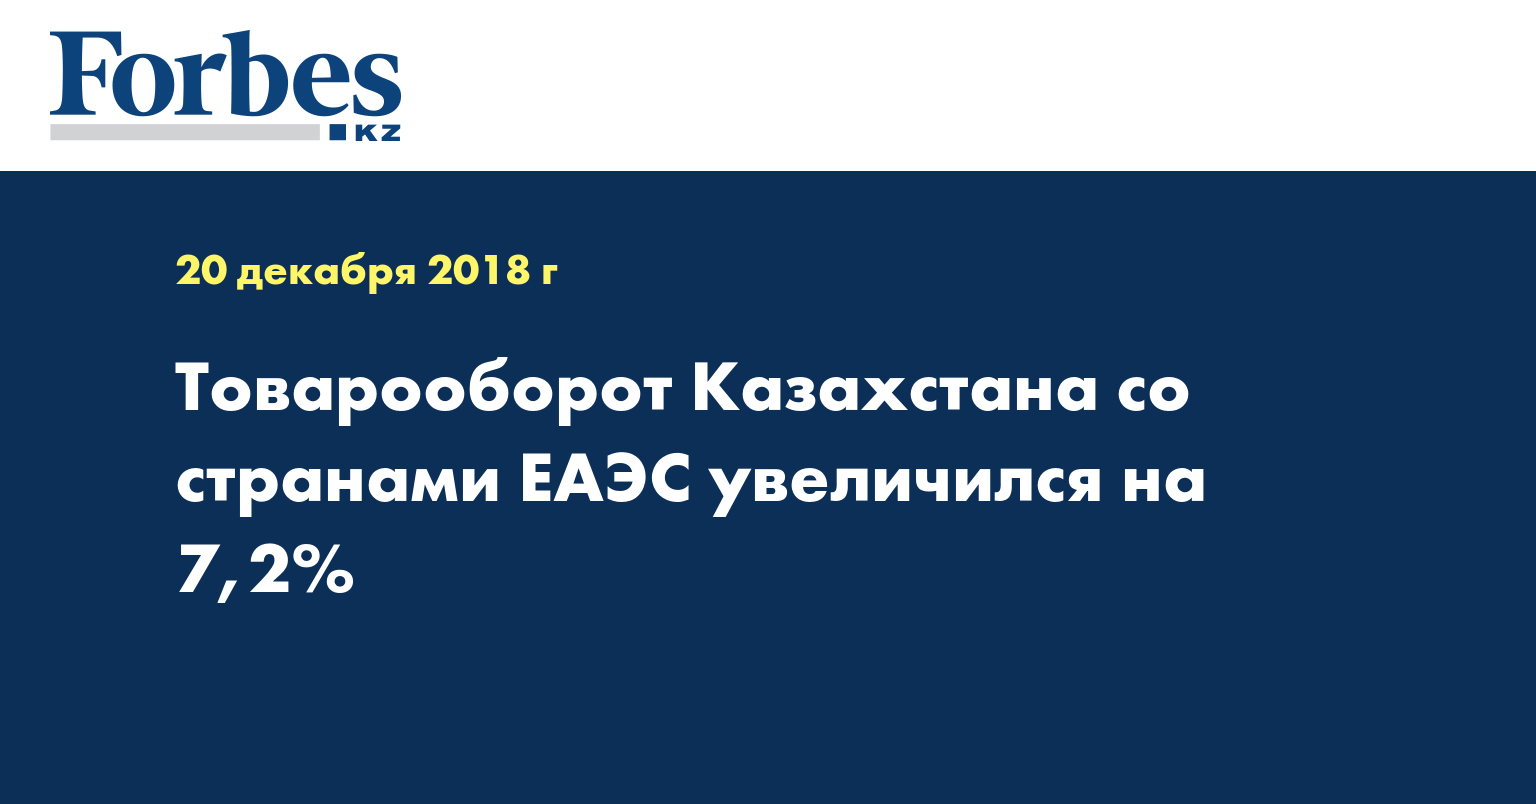 Товарооборот Казахстана со странами ЕАЭС увеличился на 7,2%